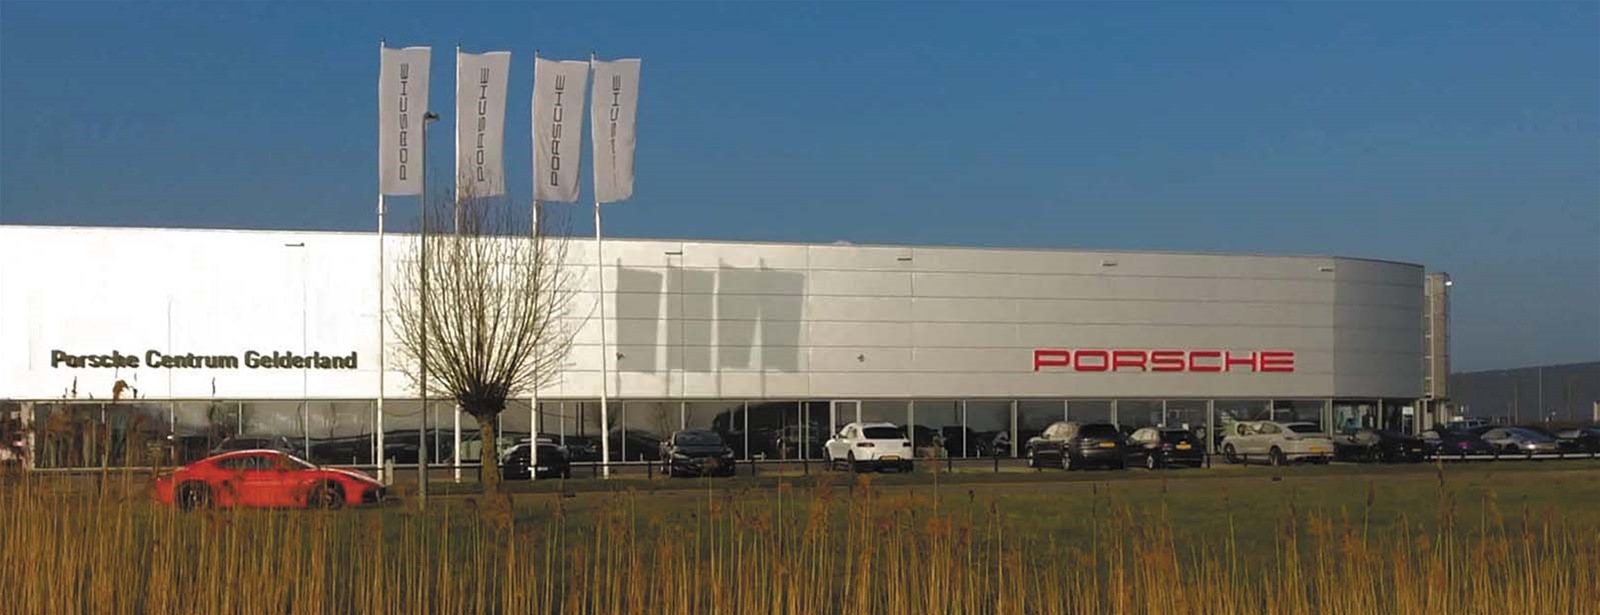 Porsche Centrum Gelderland Moodfilm